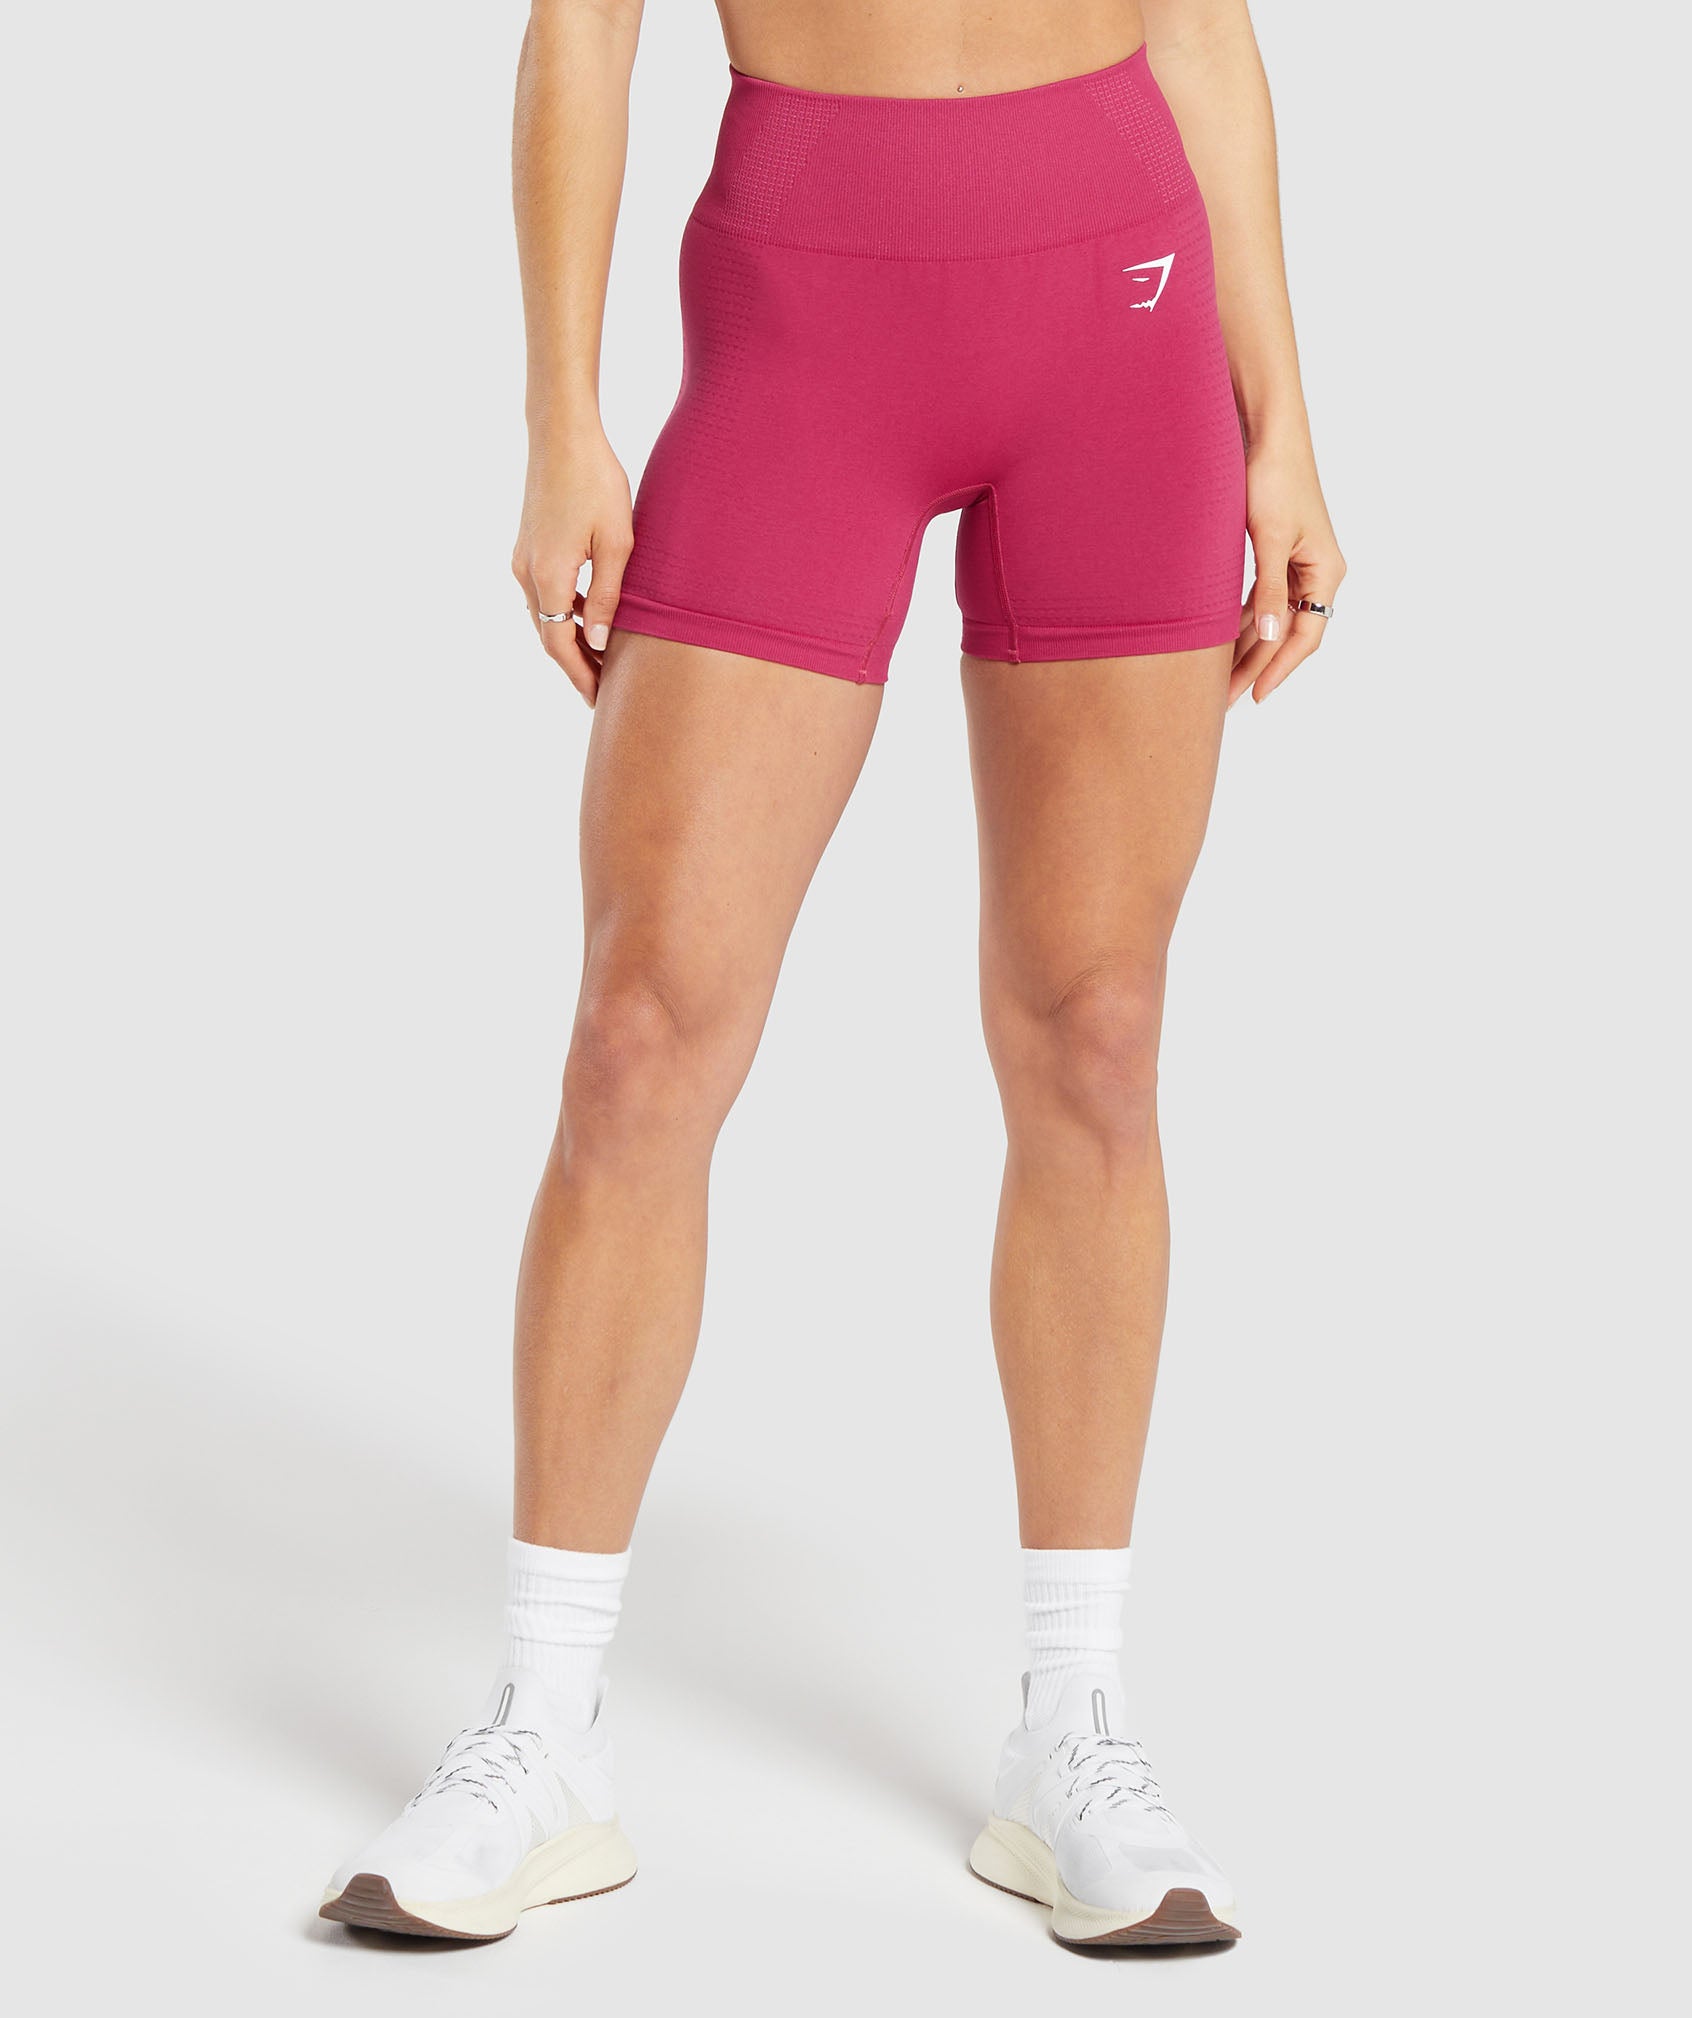 Vital Seamless 2.0 Shorts in Vintage Pink/Marl is niet op voorraad